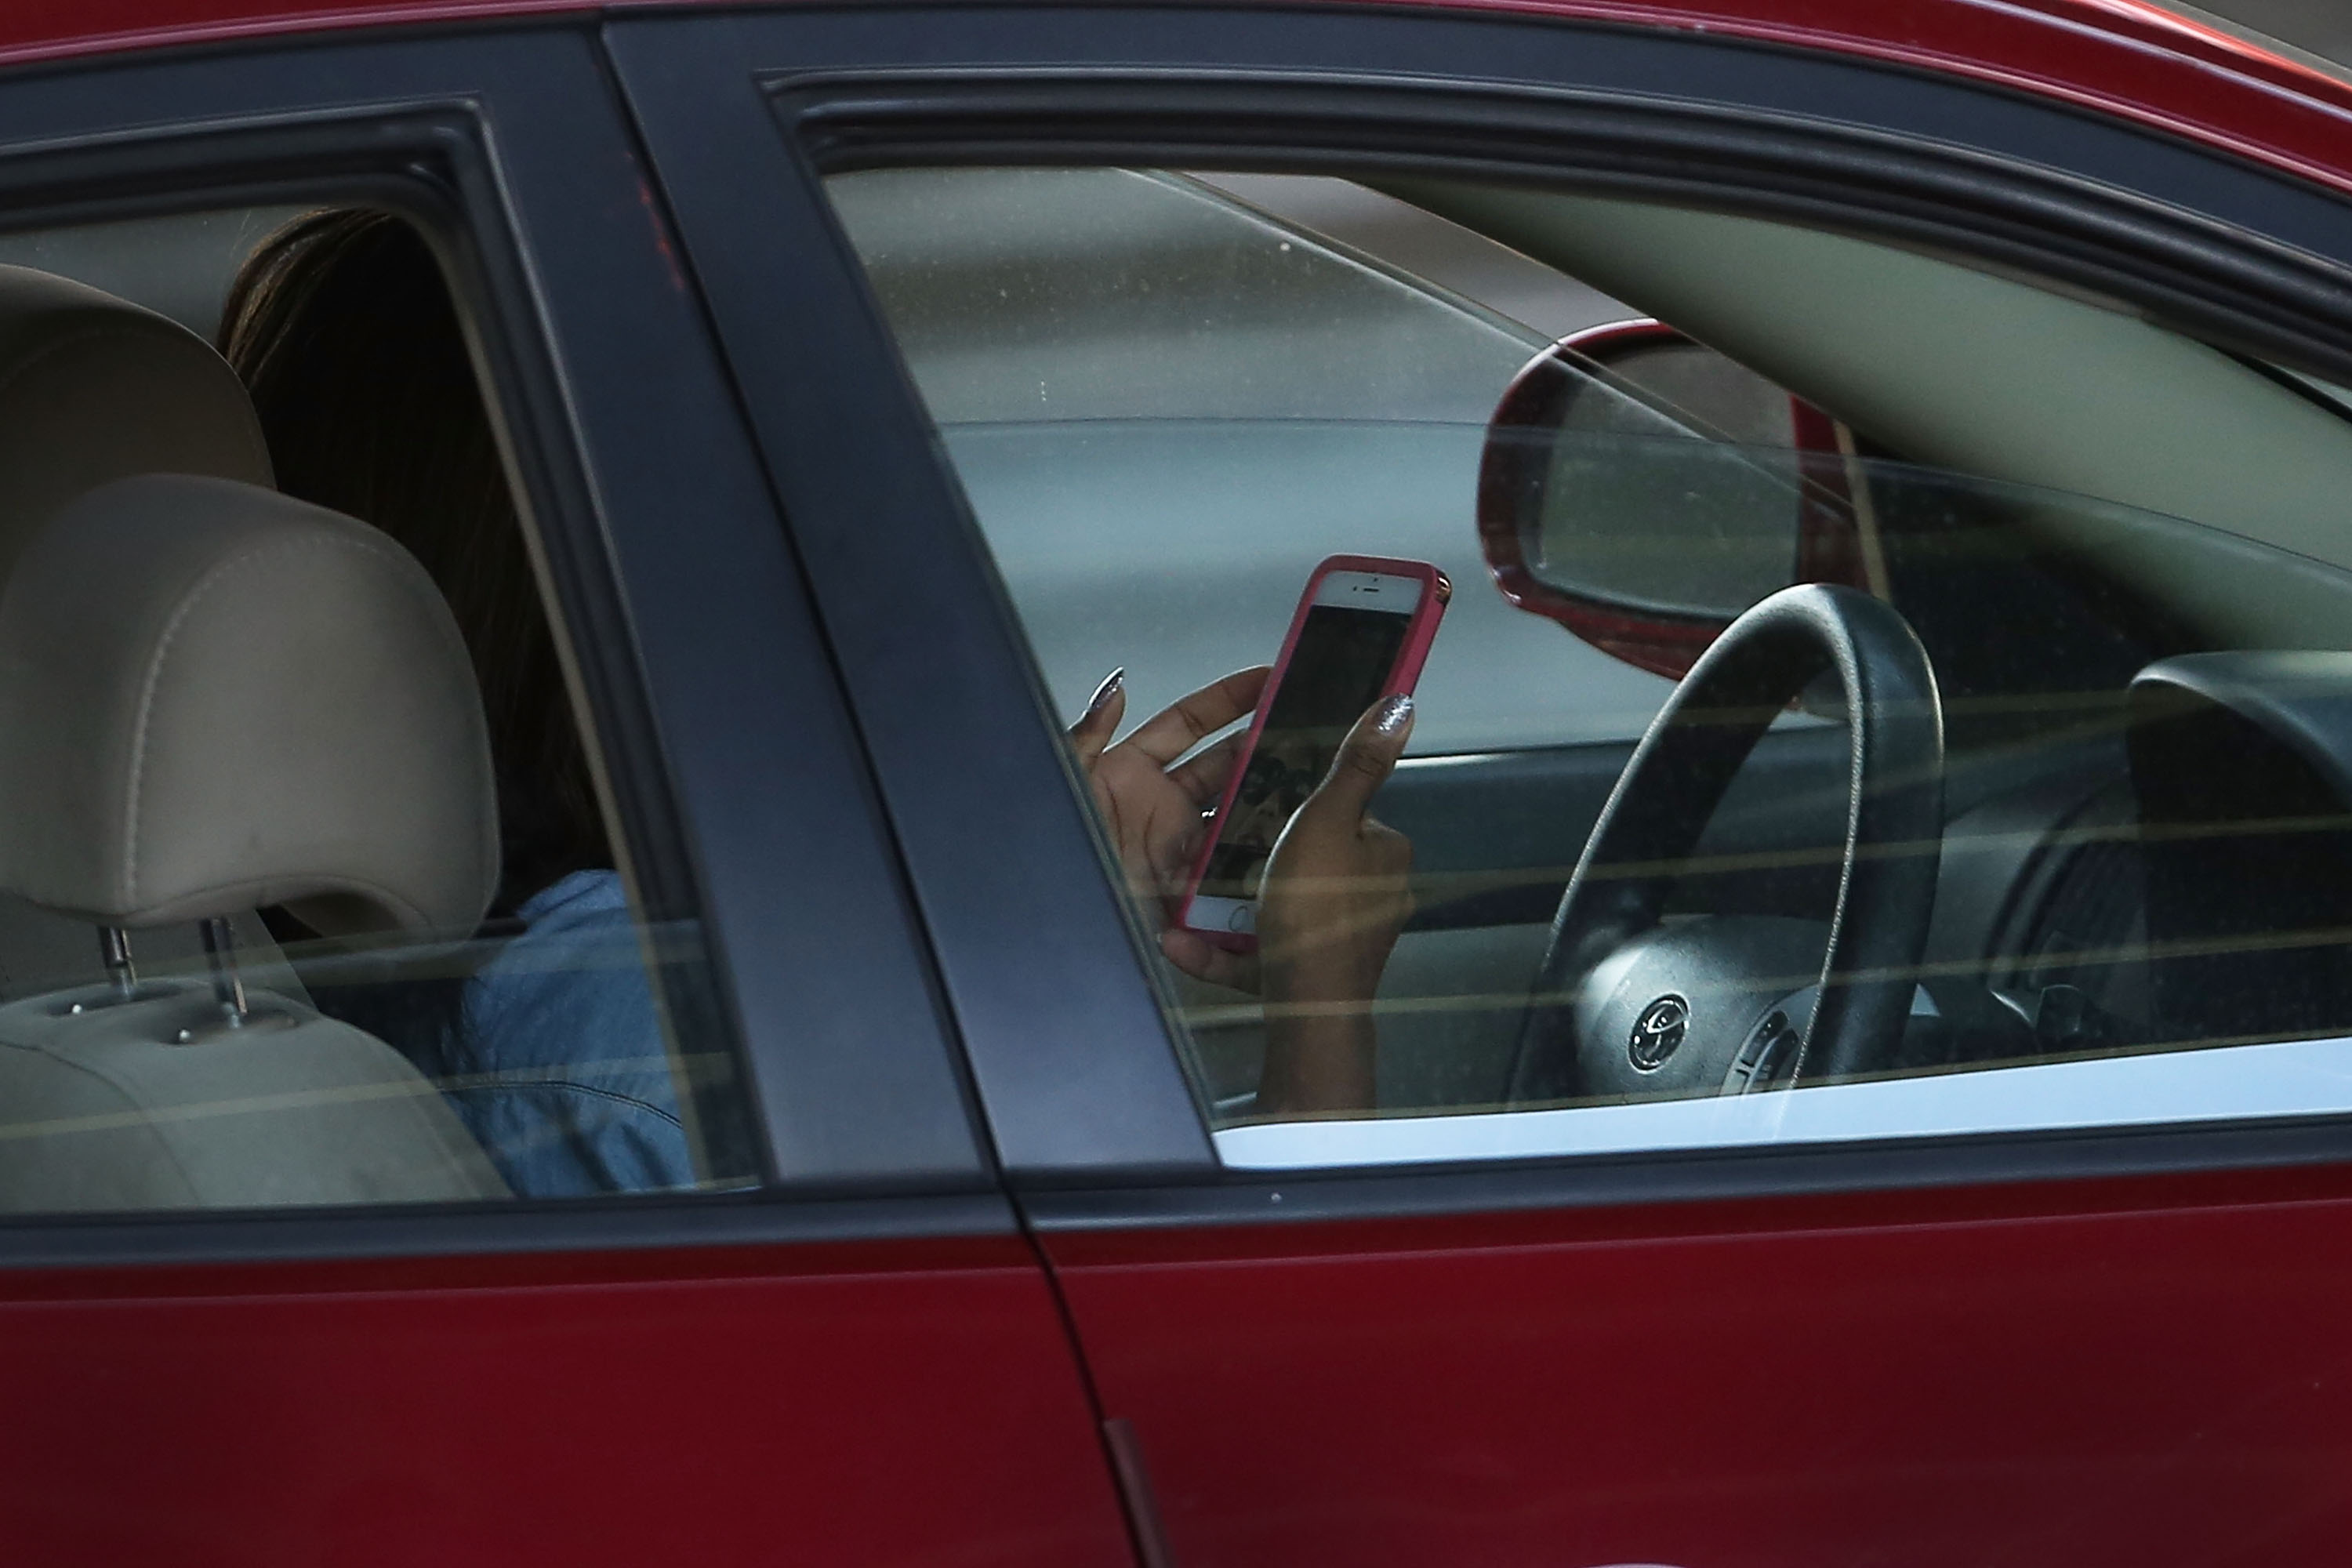 La legislación de Florida solo prohíbe el hecho de textear en la carretera, pero no dice nada sobre las llamadas telefónicas.